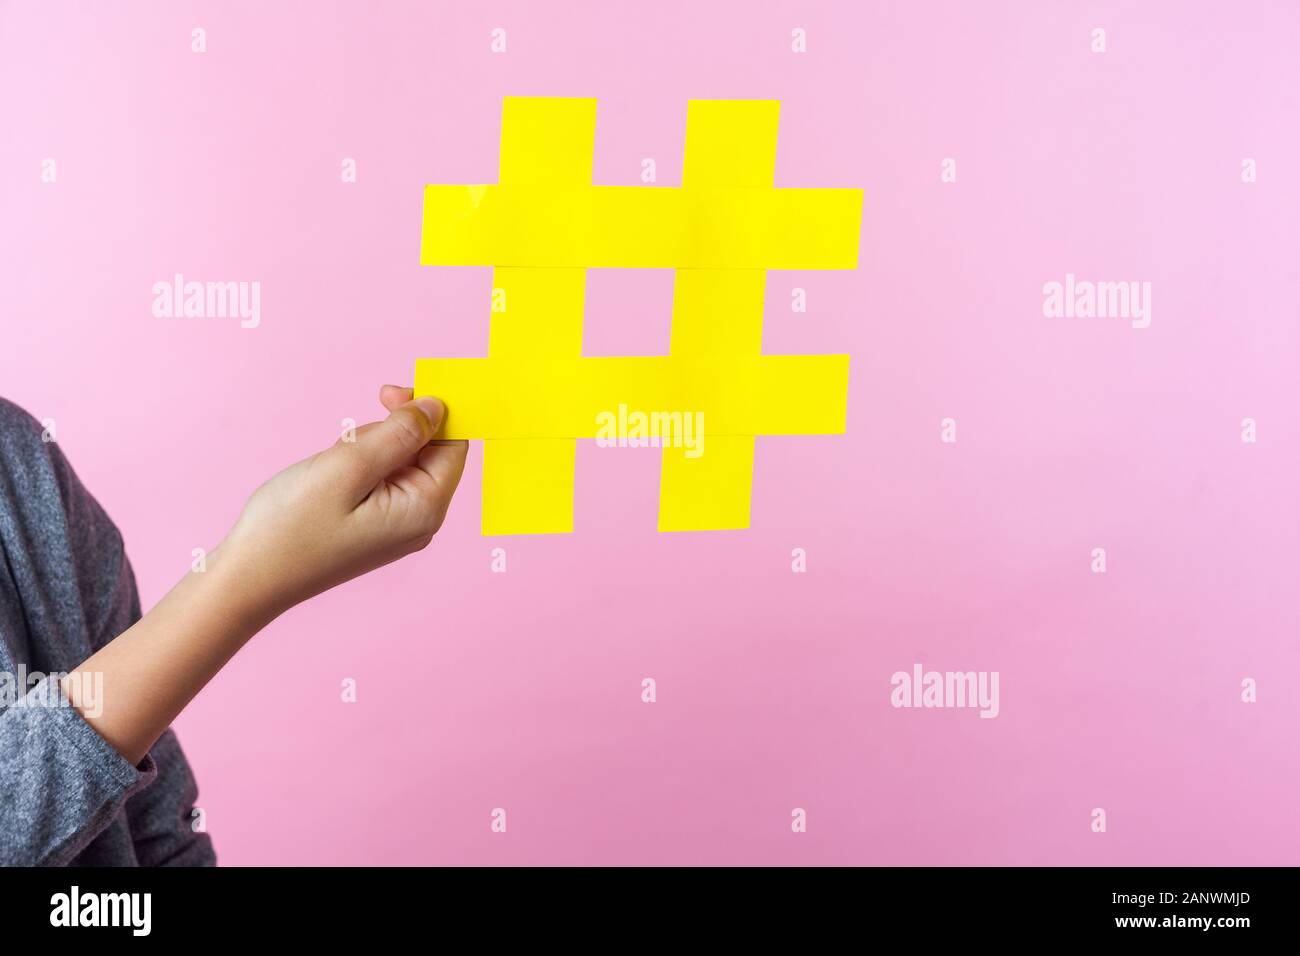 Nahaufnahme von winzigen weibliche Hand, die eine große grosse hashtag Zeichen, Raute von Promotion- und Popularität auf Internet, Social Media Marketing, blogging. ind Stockfoto